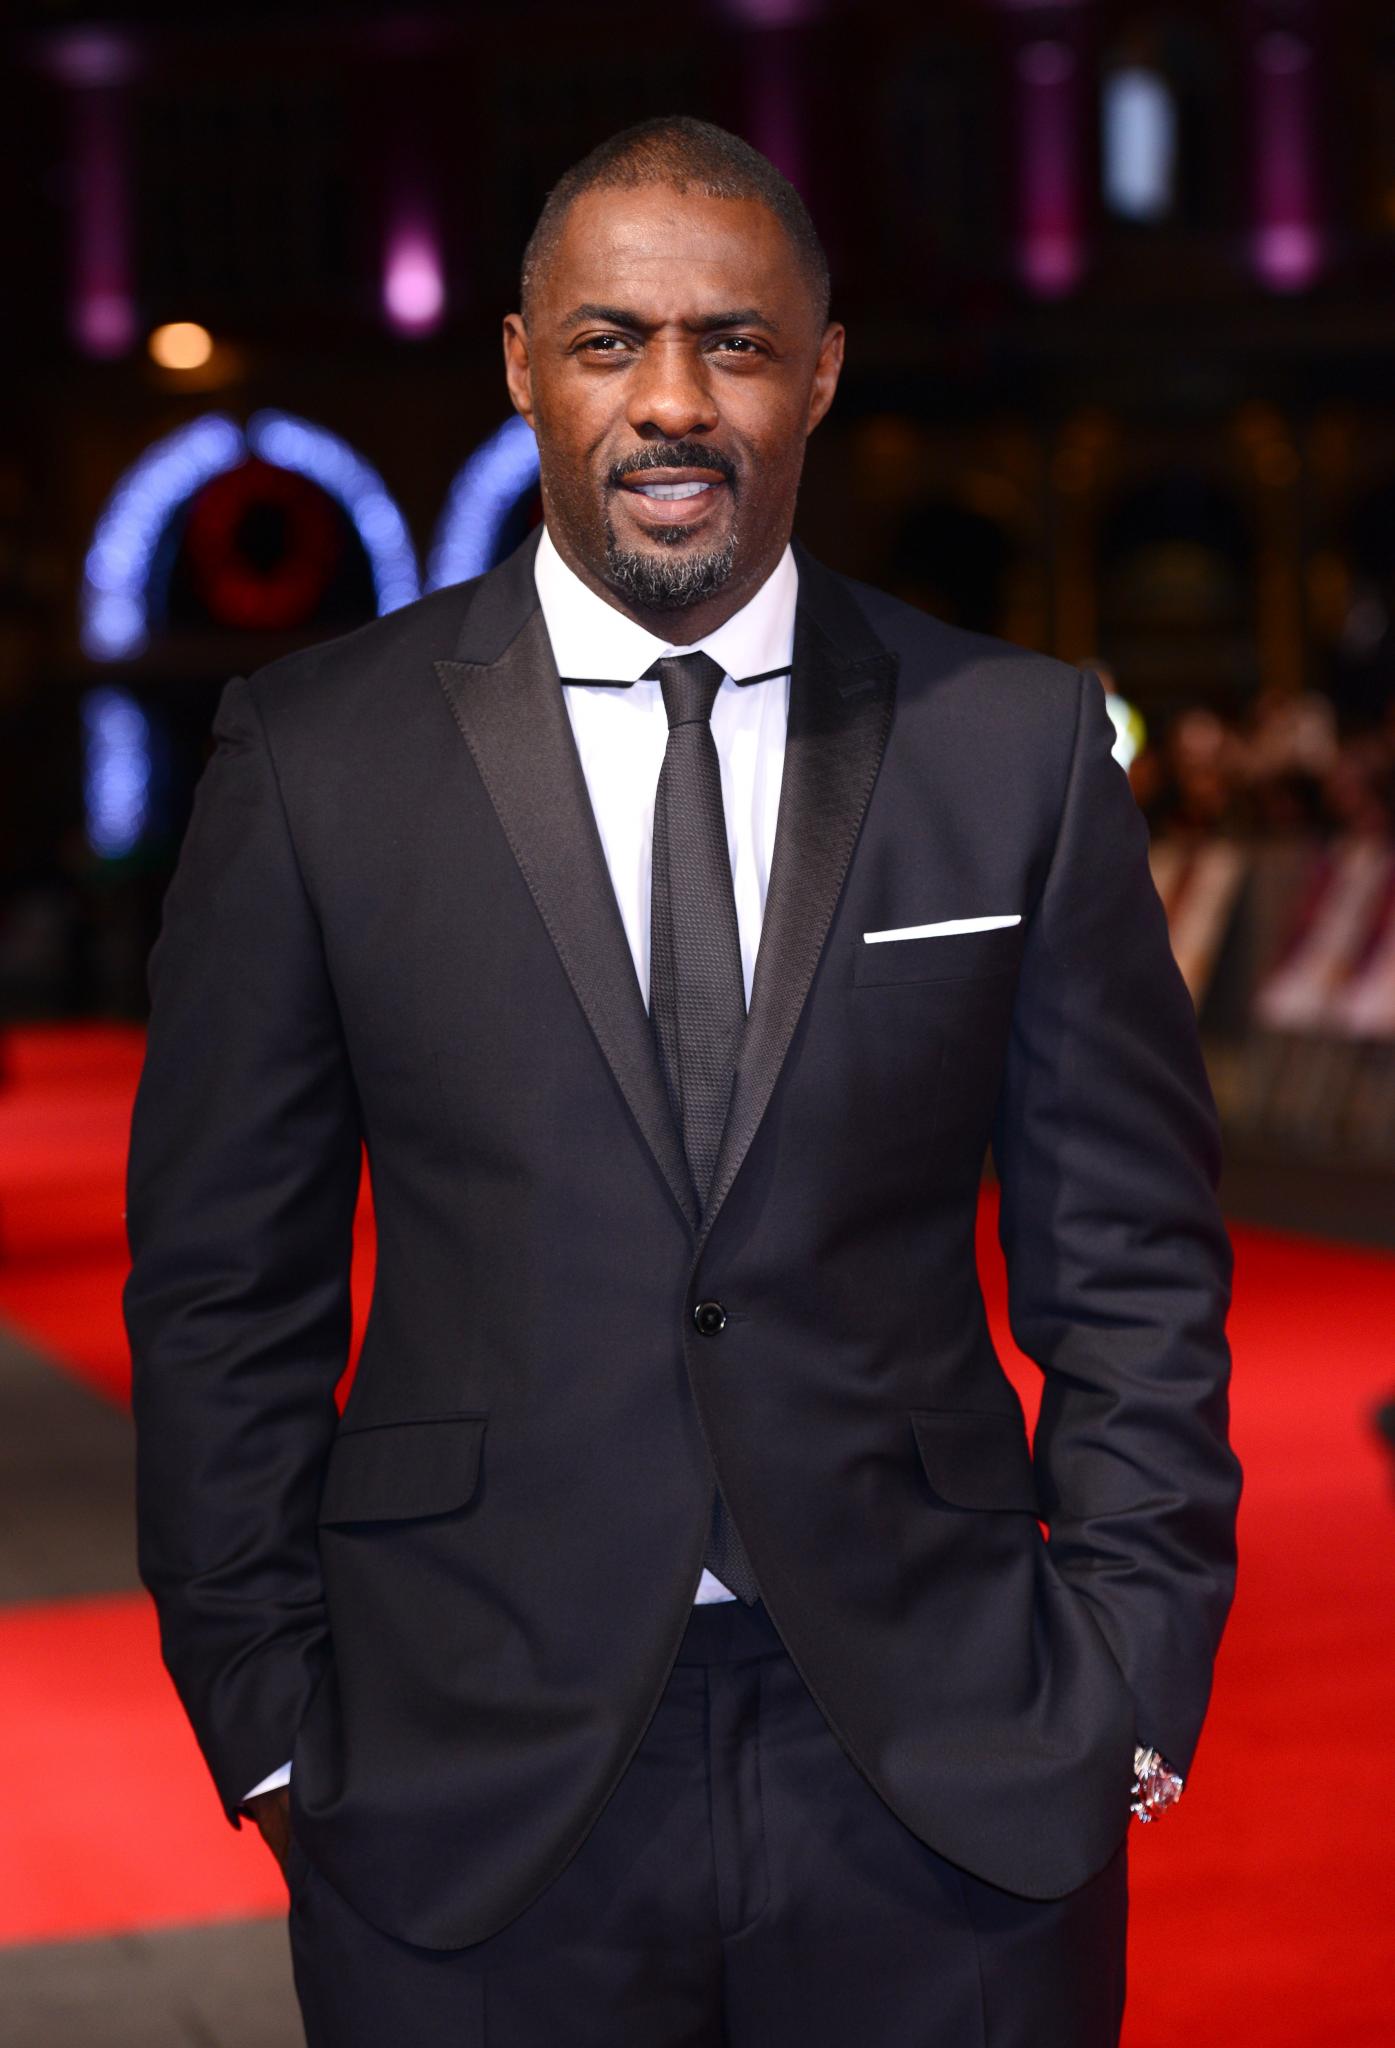 Idris Elba Not a Fan of 'Black Bond' Rumors
